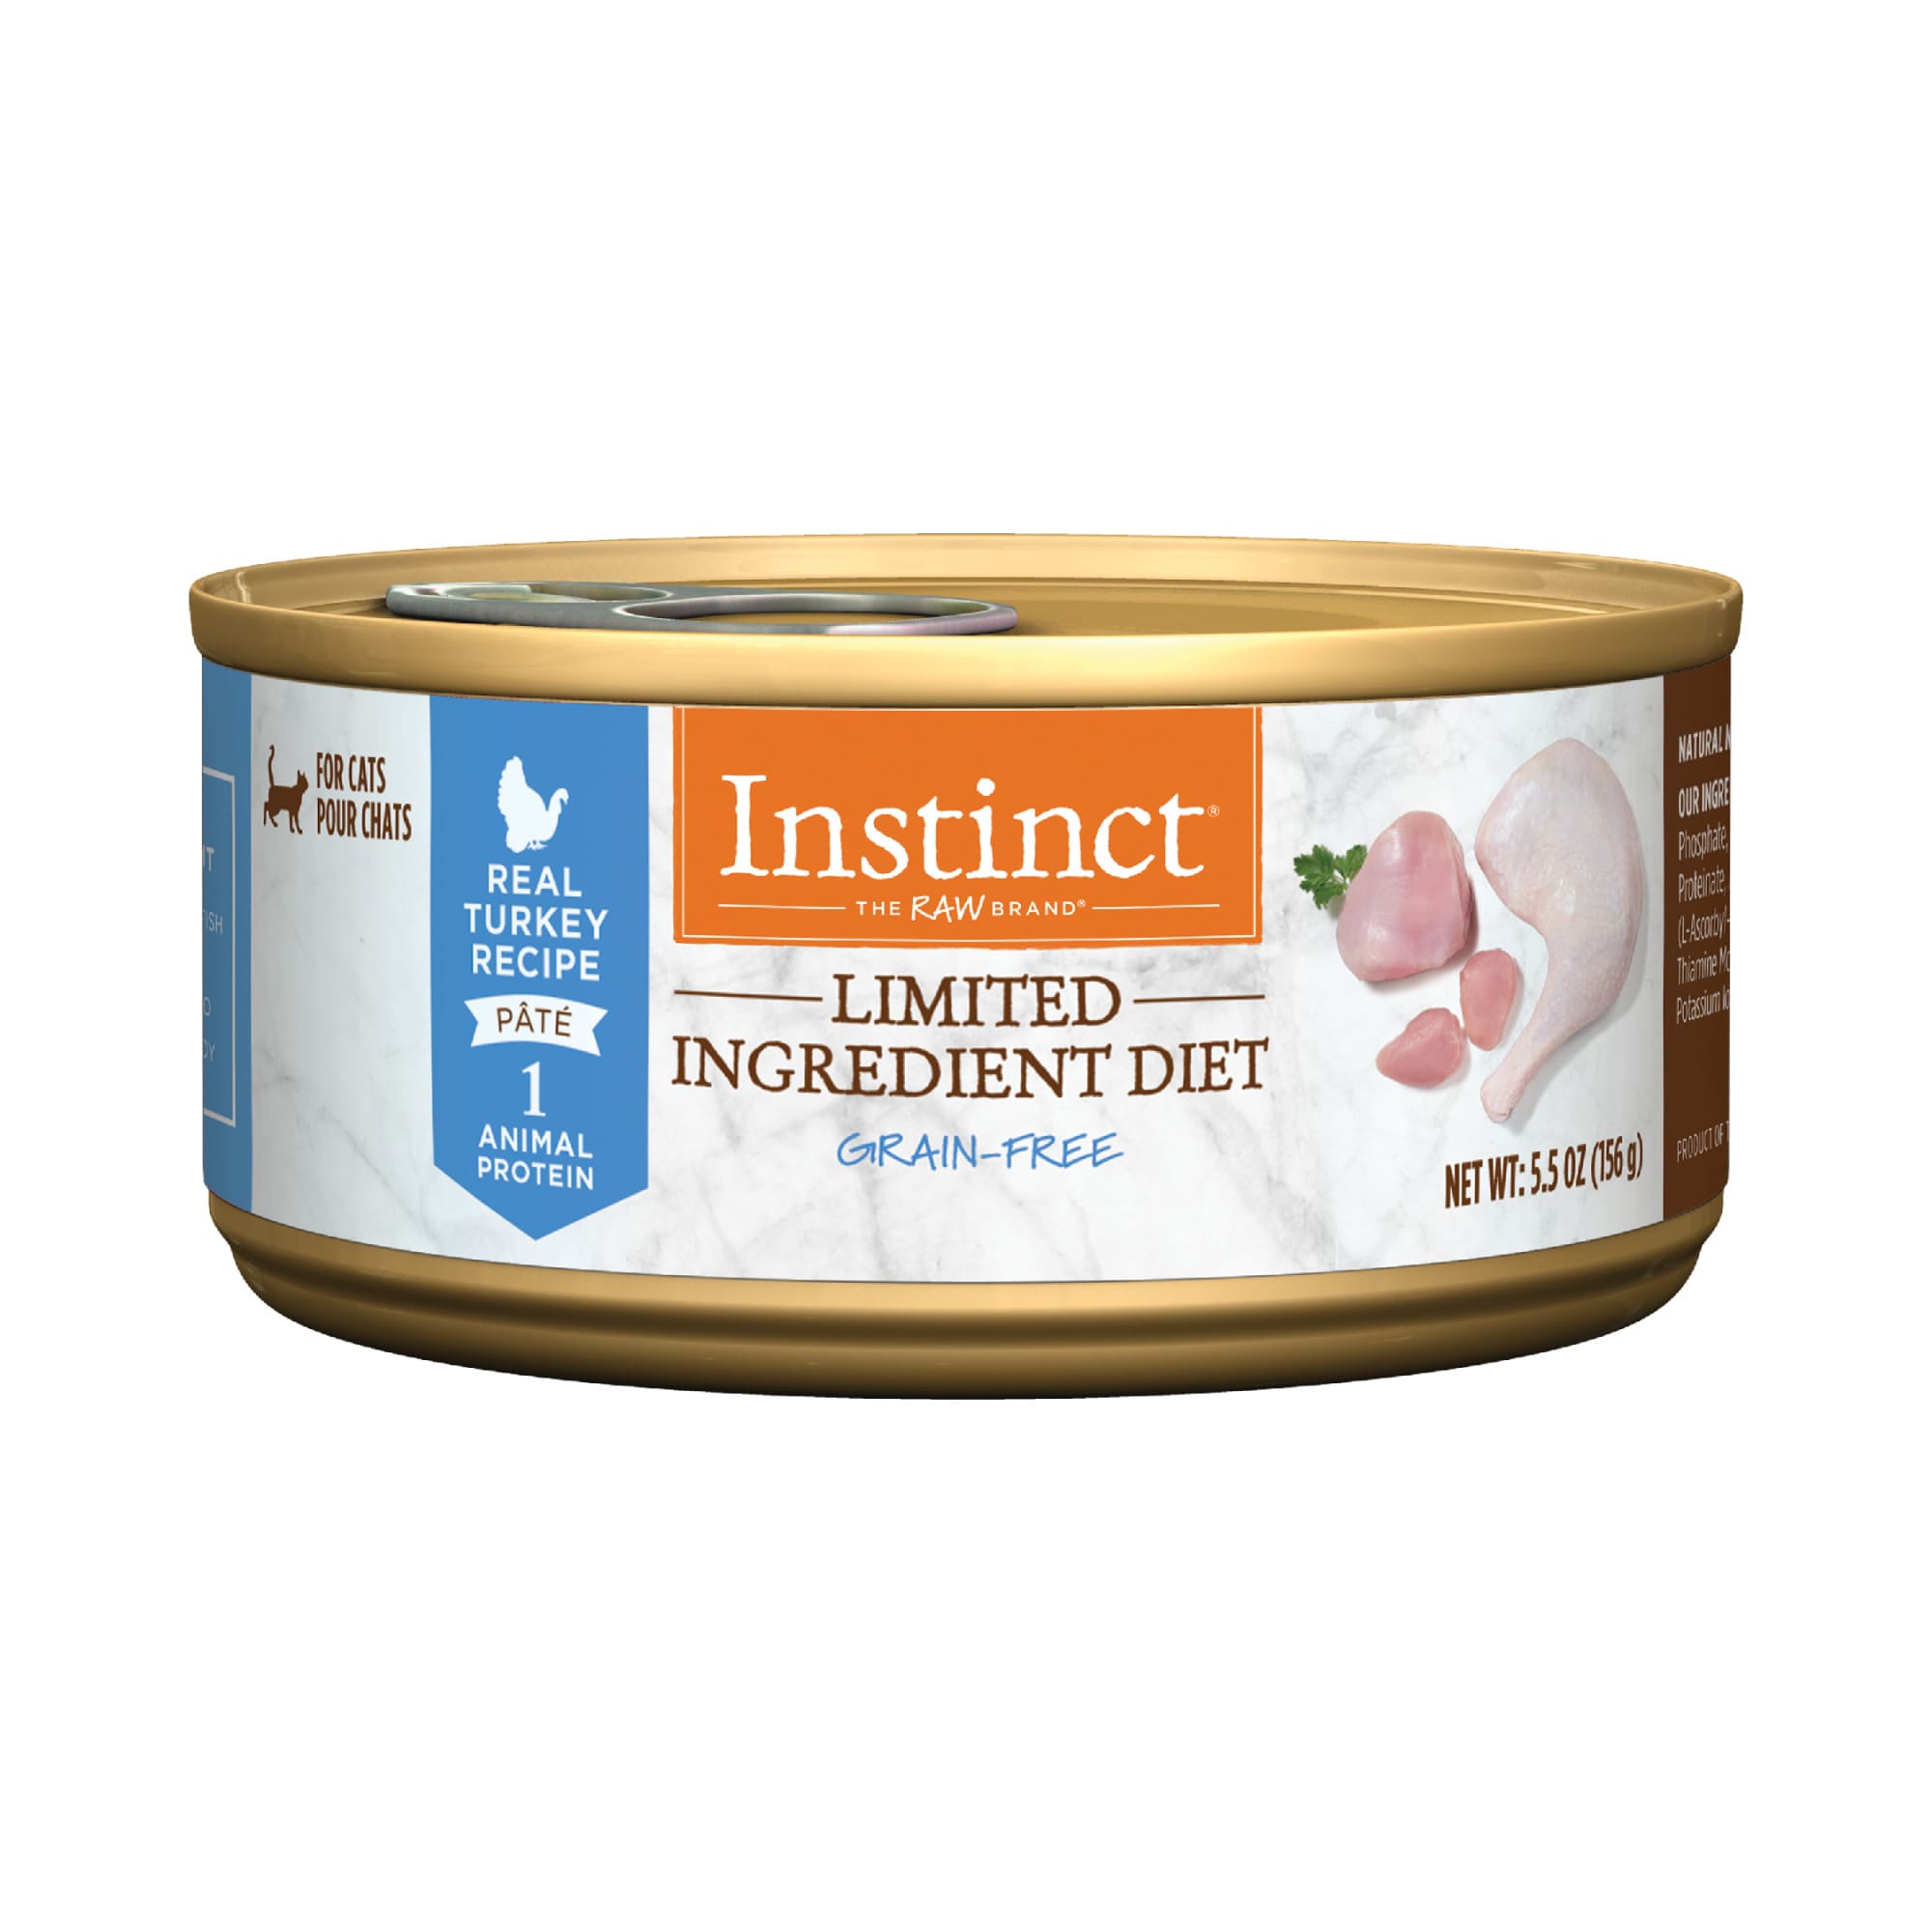 Instinct Limited Ingredient Diet GrainFree Pate Real Turkey Recipe Wet